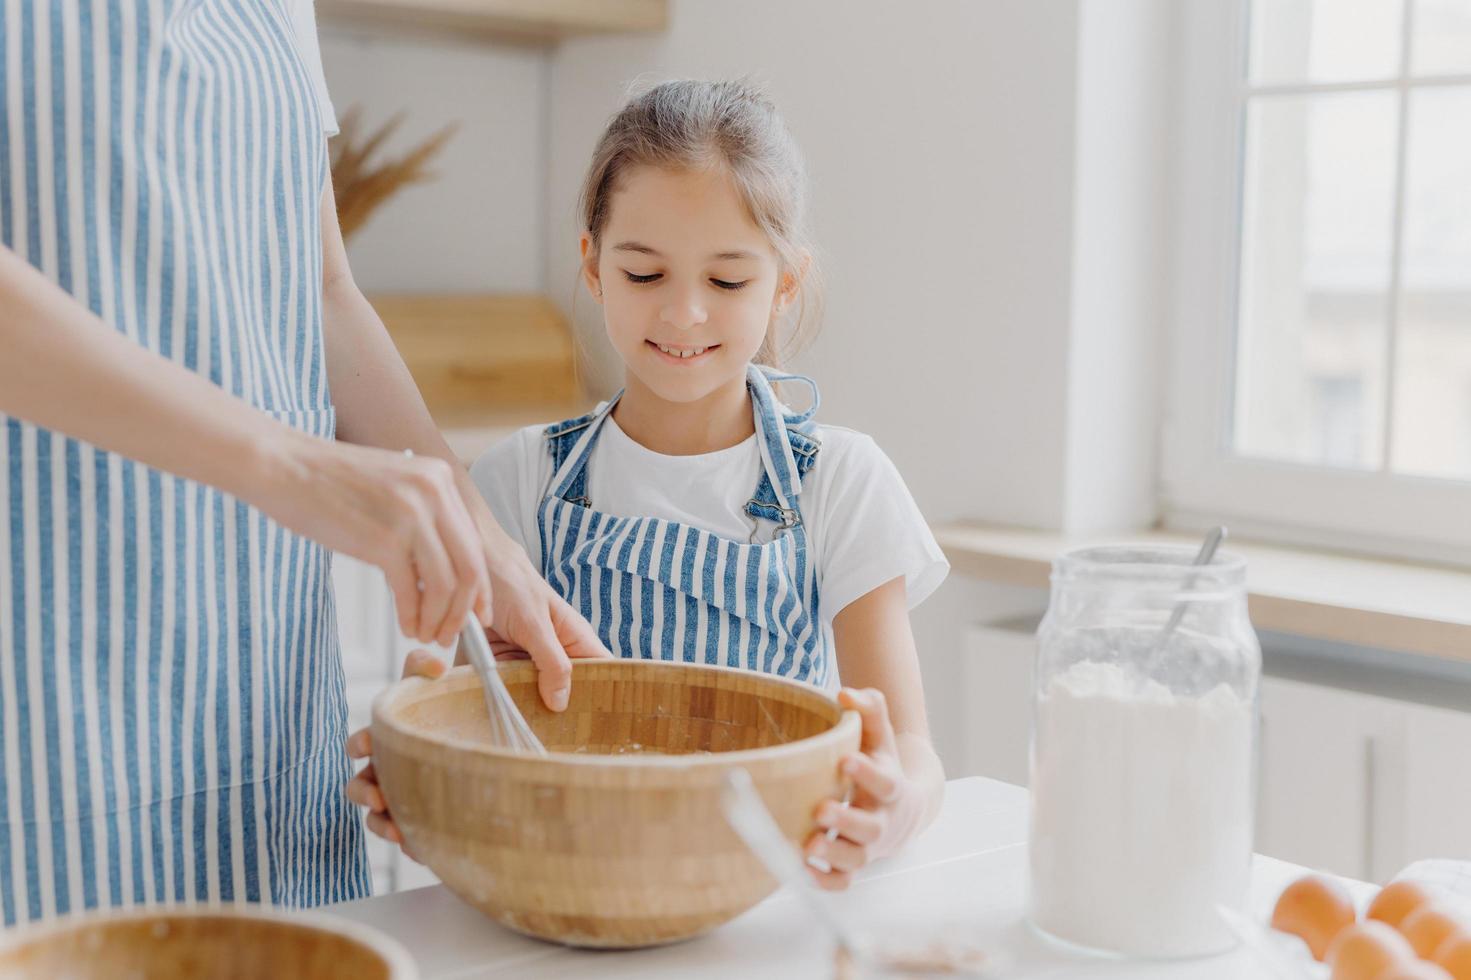 una pequeña ayudante curiosa mira atentamente cómo cocina la madre, ayuda a batir los ingredientes, usa una camiseta blanca y un delantal a rayas, prepara un pastel sabroso juntos, como hornear algo delicioso foto